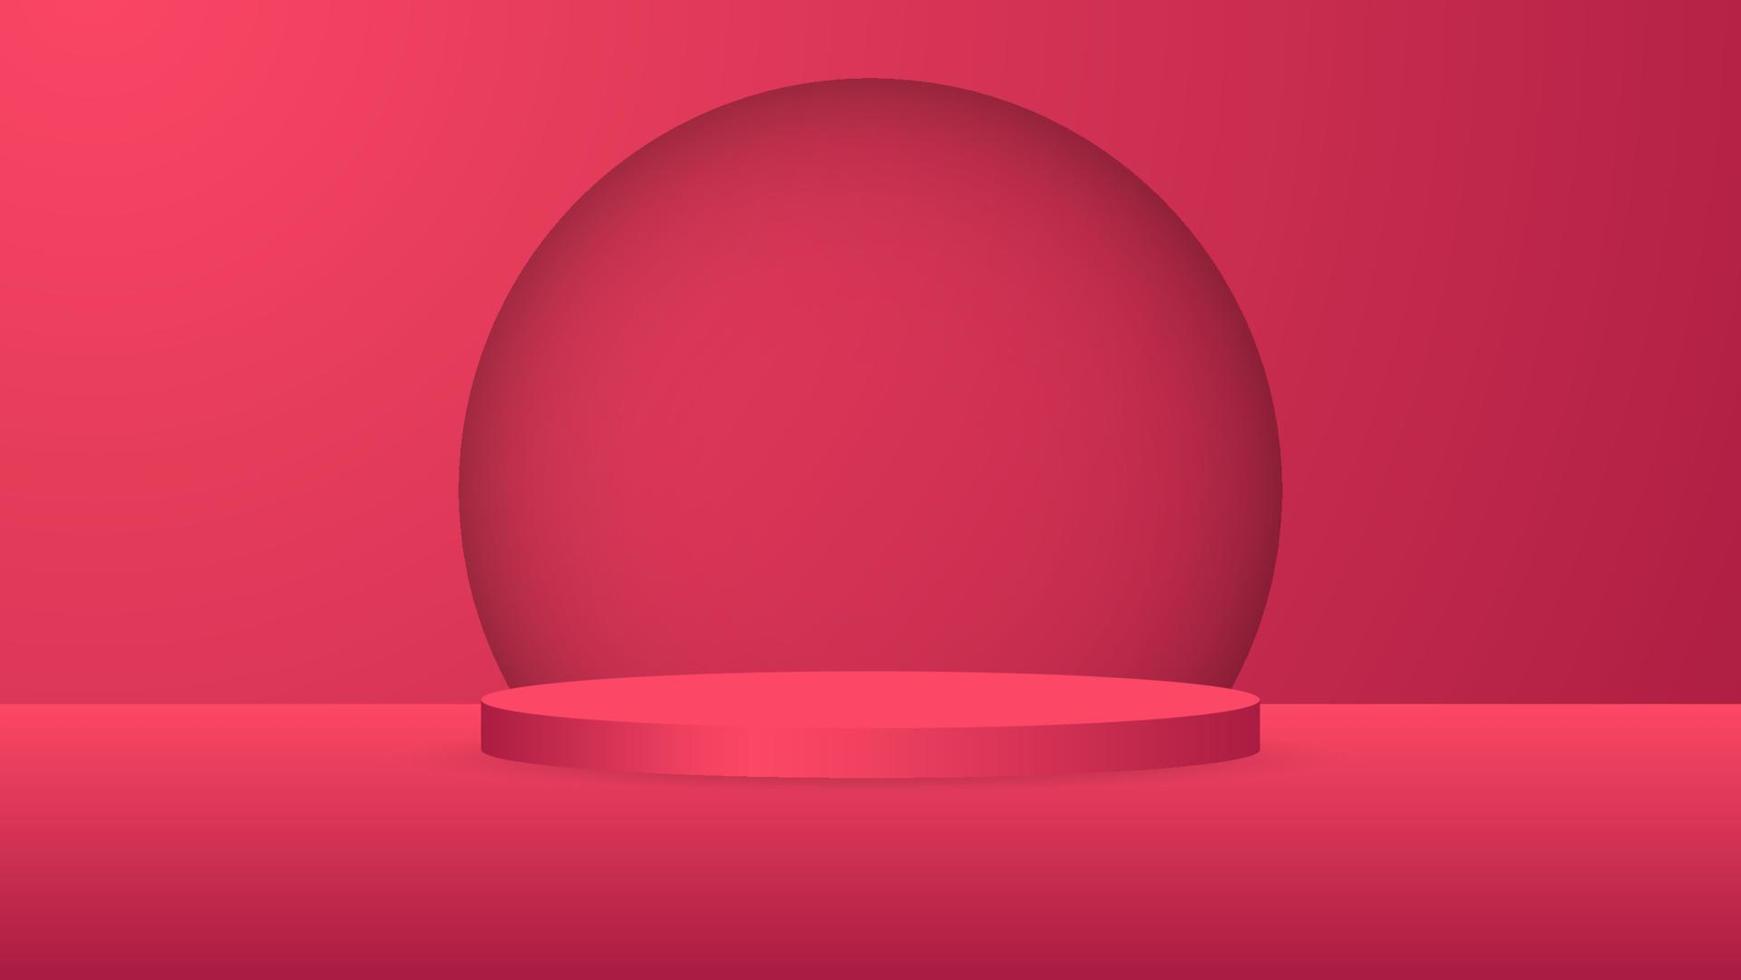 blanco redondo pedestal. rojo circular podio para excepcional lujo producto publicidad monitor en color antecedentes con mínimo estilo en estudio habitación vector